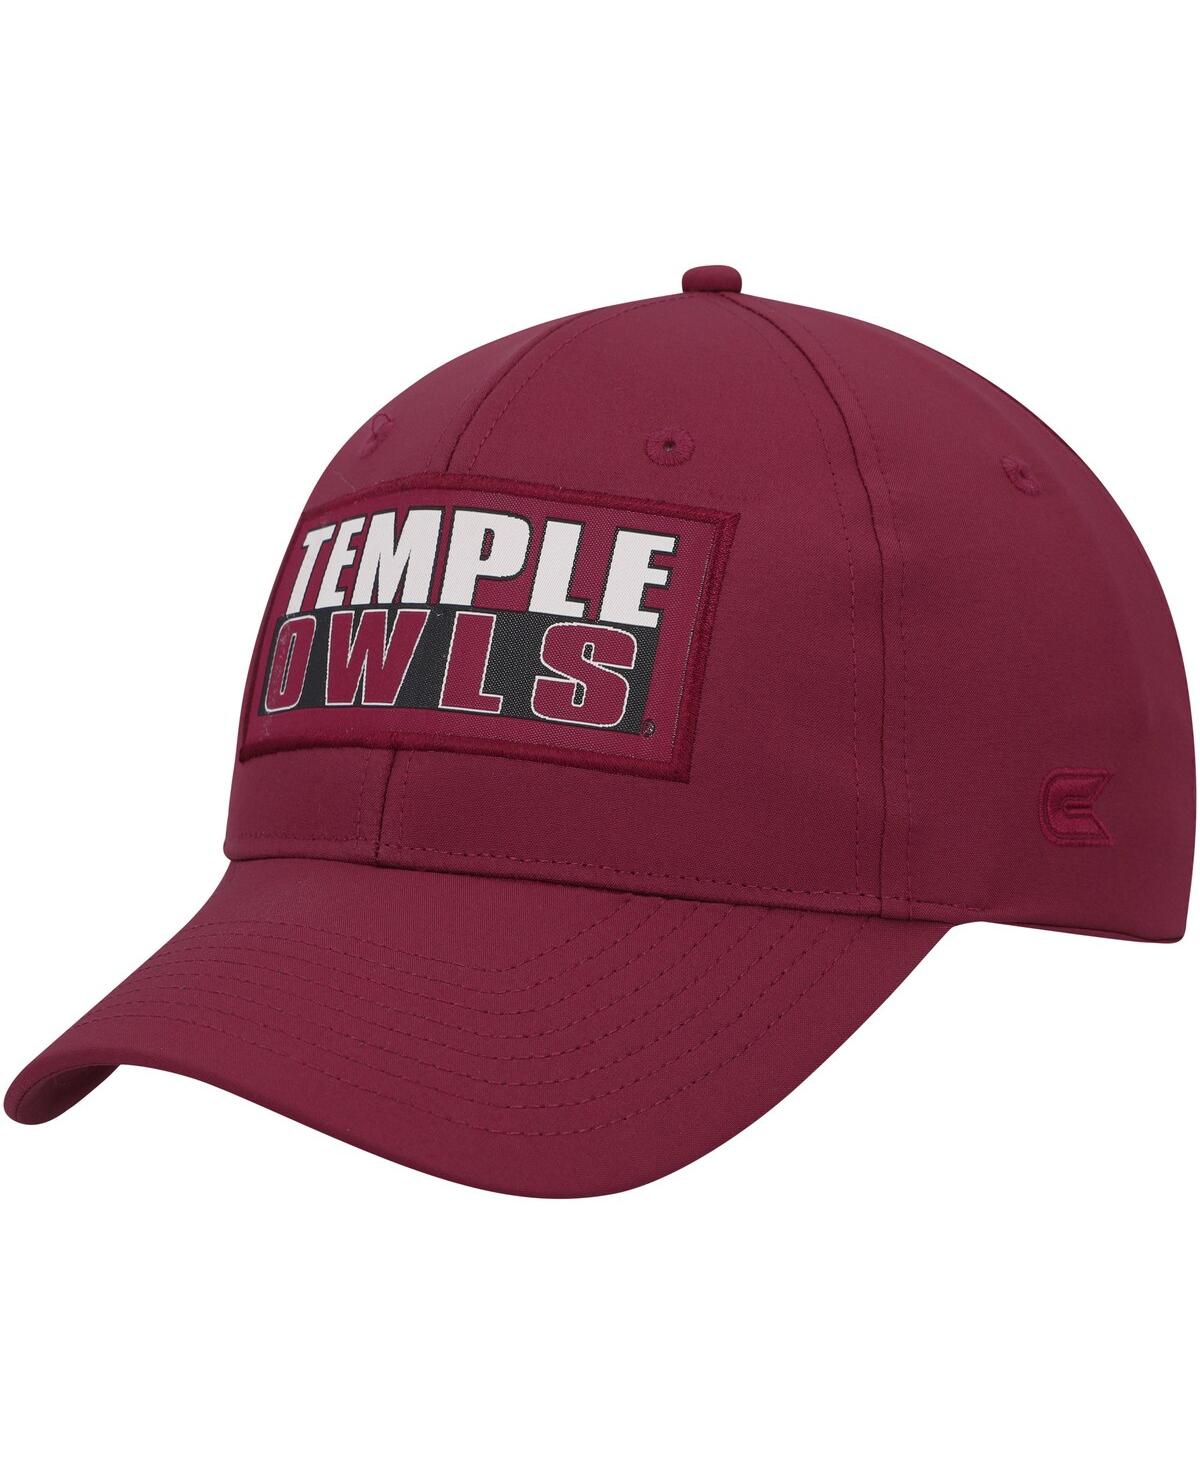 Shop Colosseum Men's  Cherry Temple Owls Positraction Snapback Hat